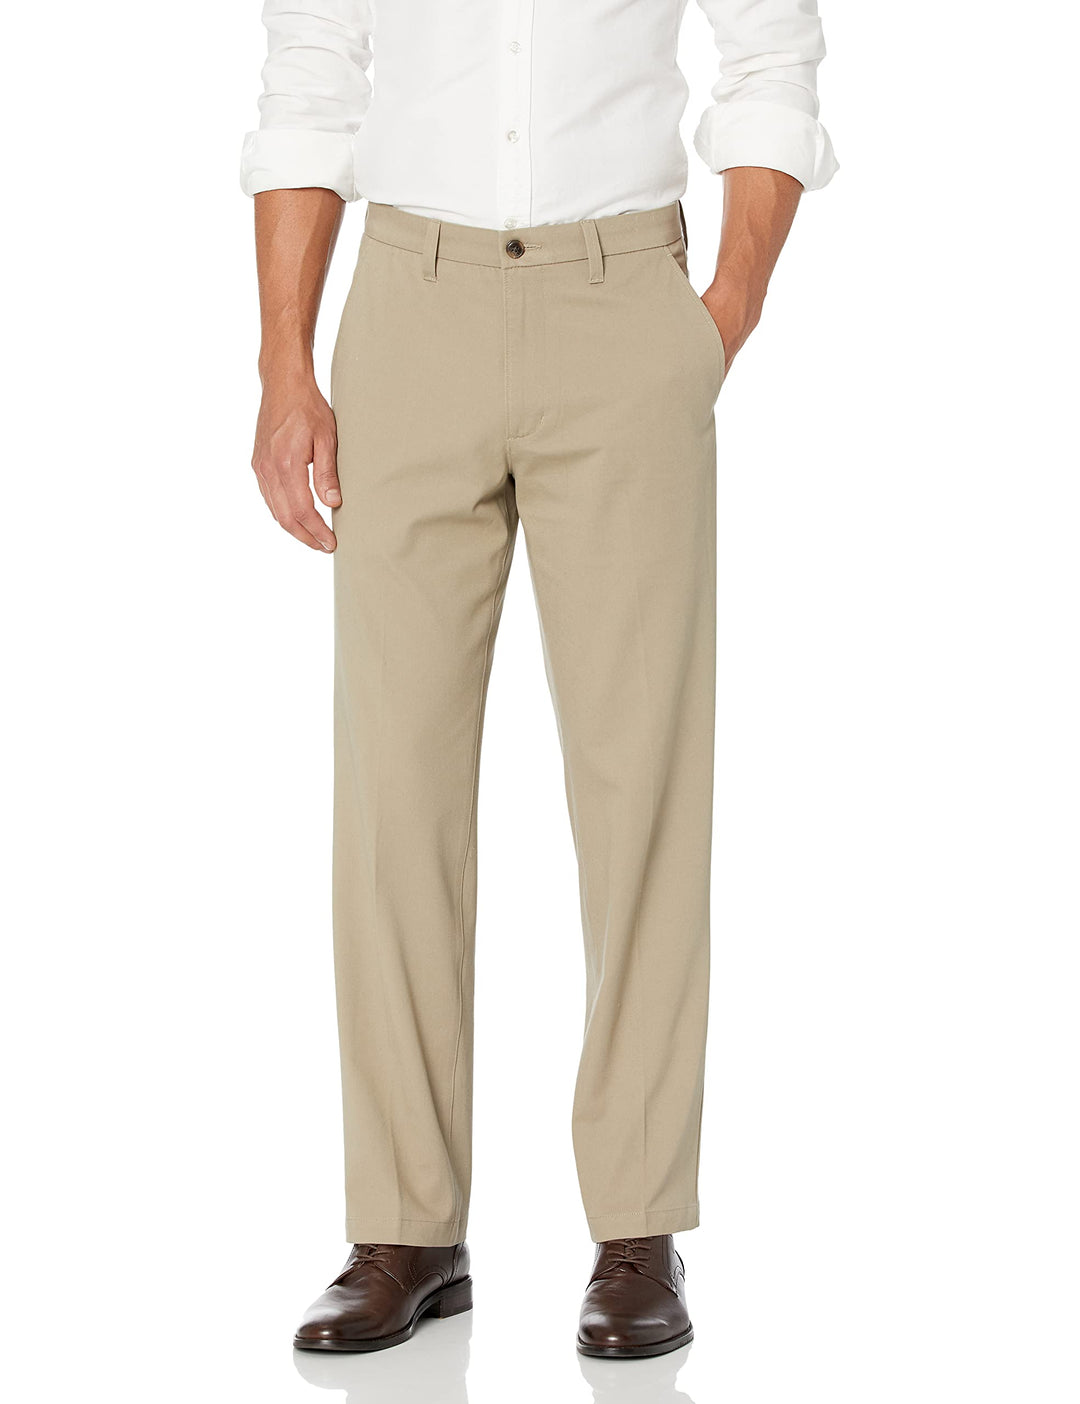 J.M. Haggar mens J.m. Haggar Luxury Comfort Classic Fit Stretch Chino Casual Pants, Medium Khaki, 40W x 29L US